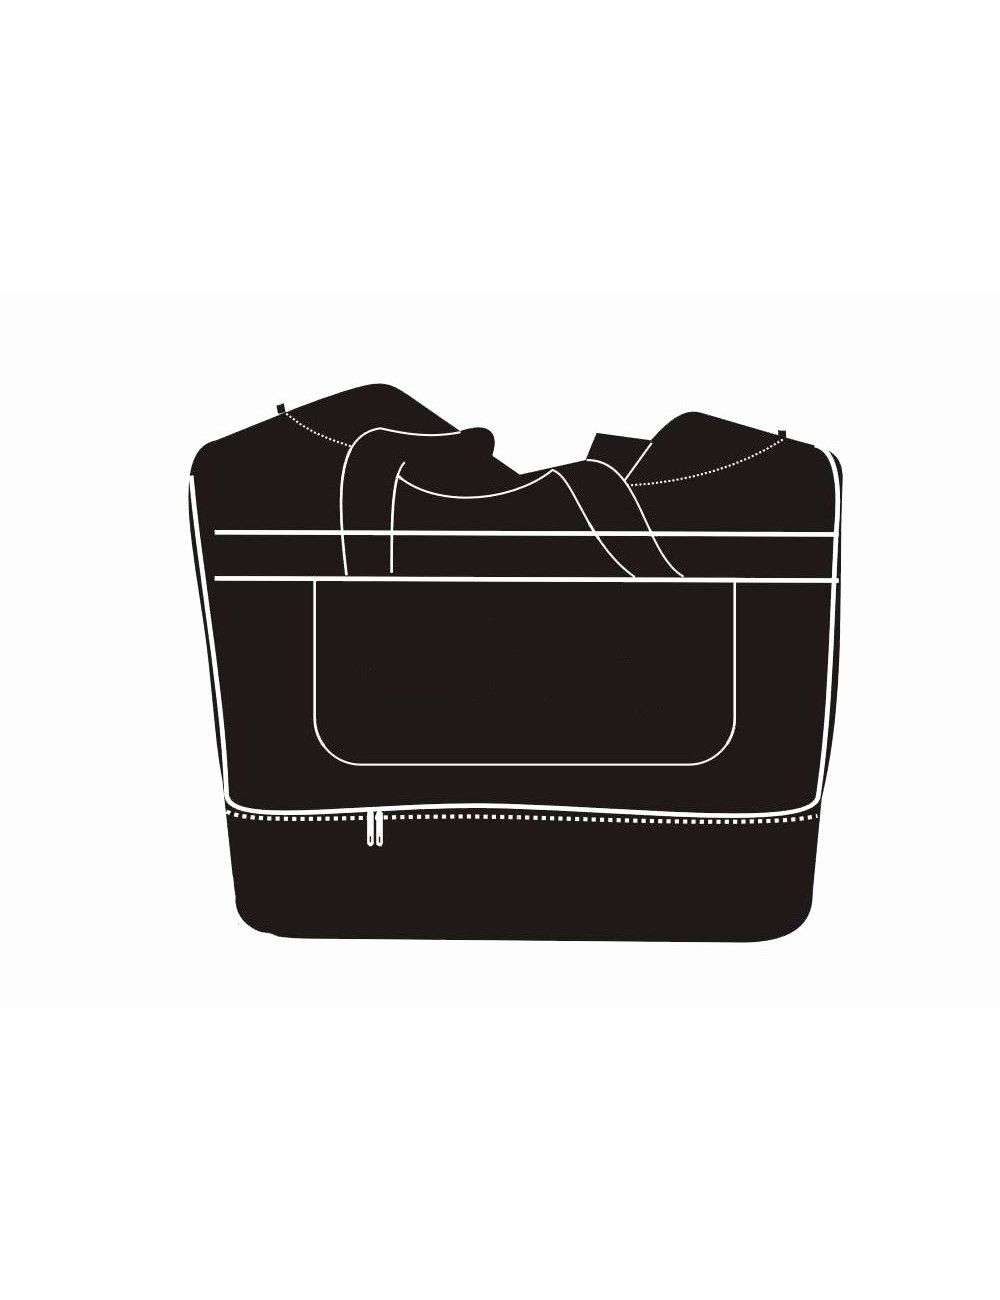 Sporttasche mit großem Nassfach / Bodenfach und Schuhfach - 1